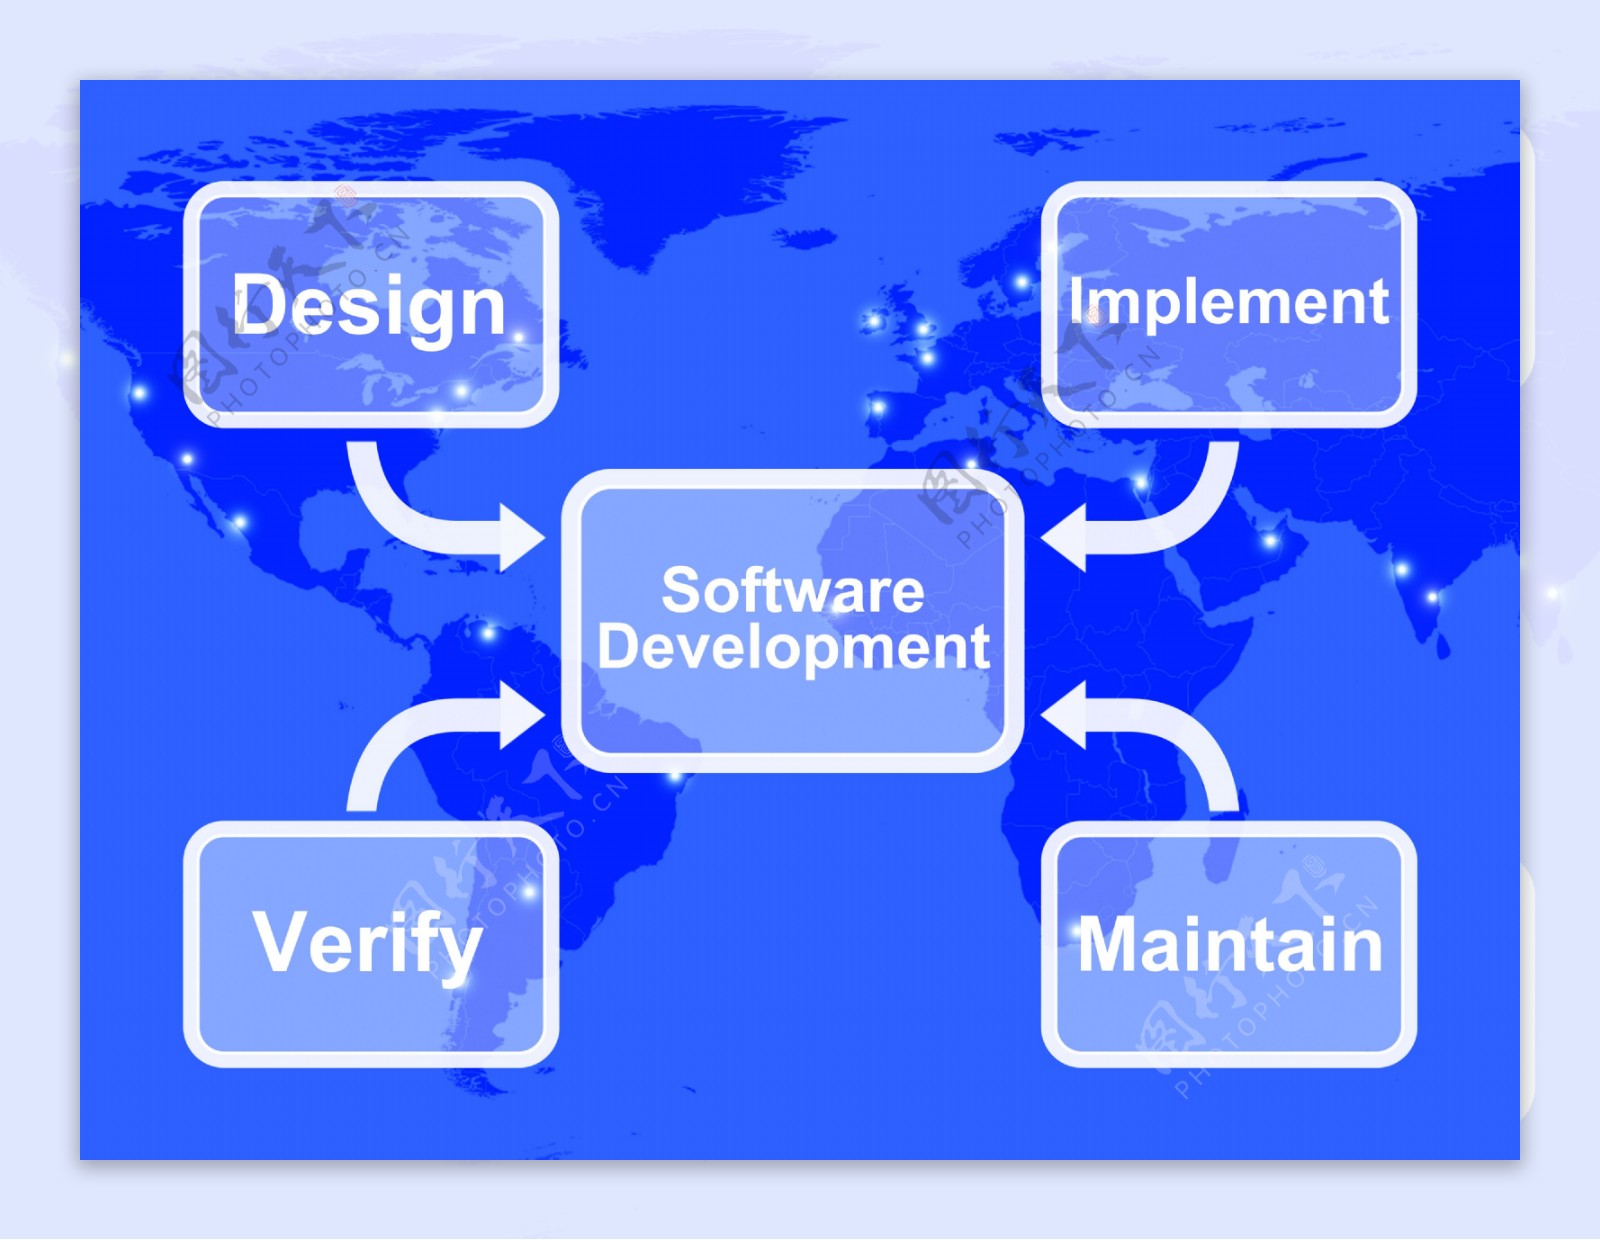 软件开发图设计实施维护和验证